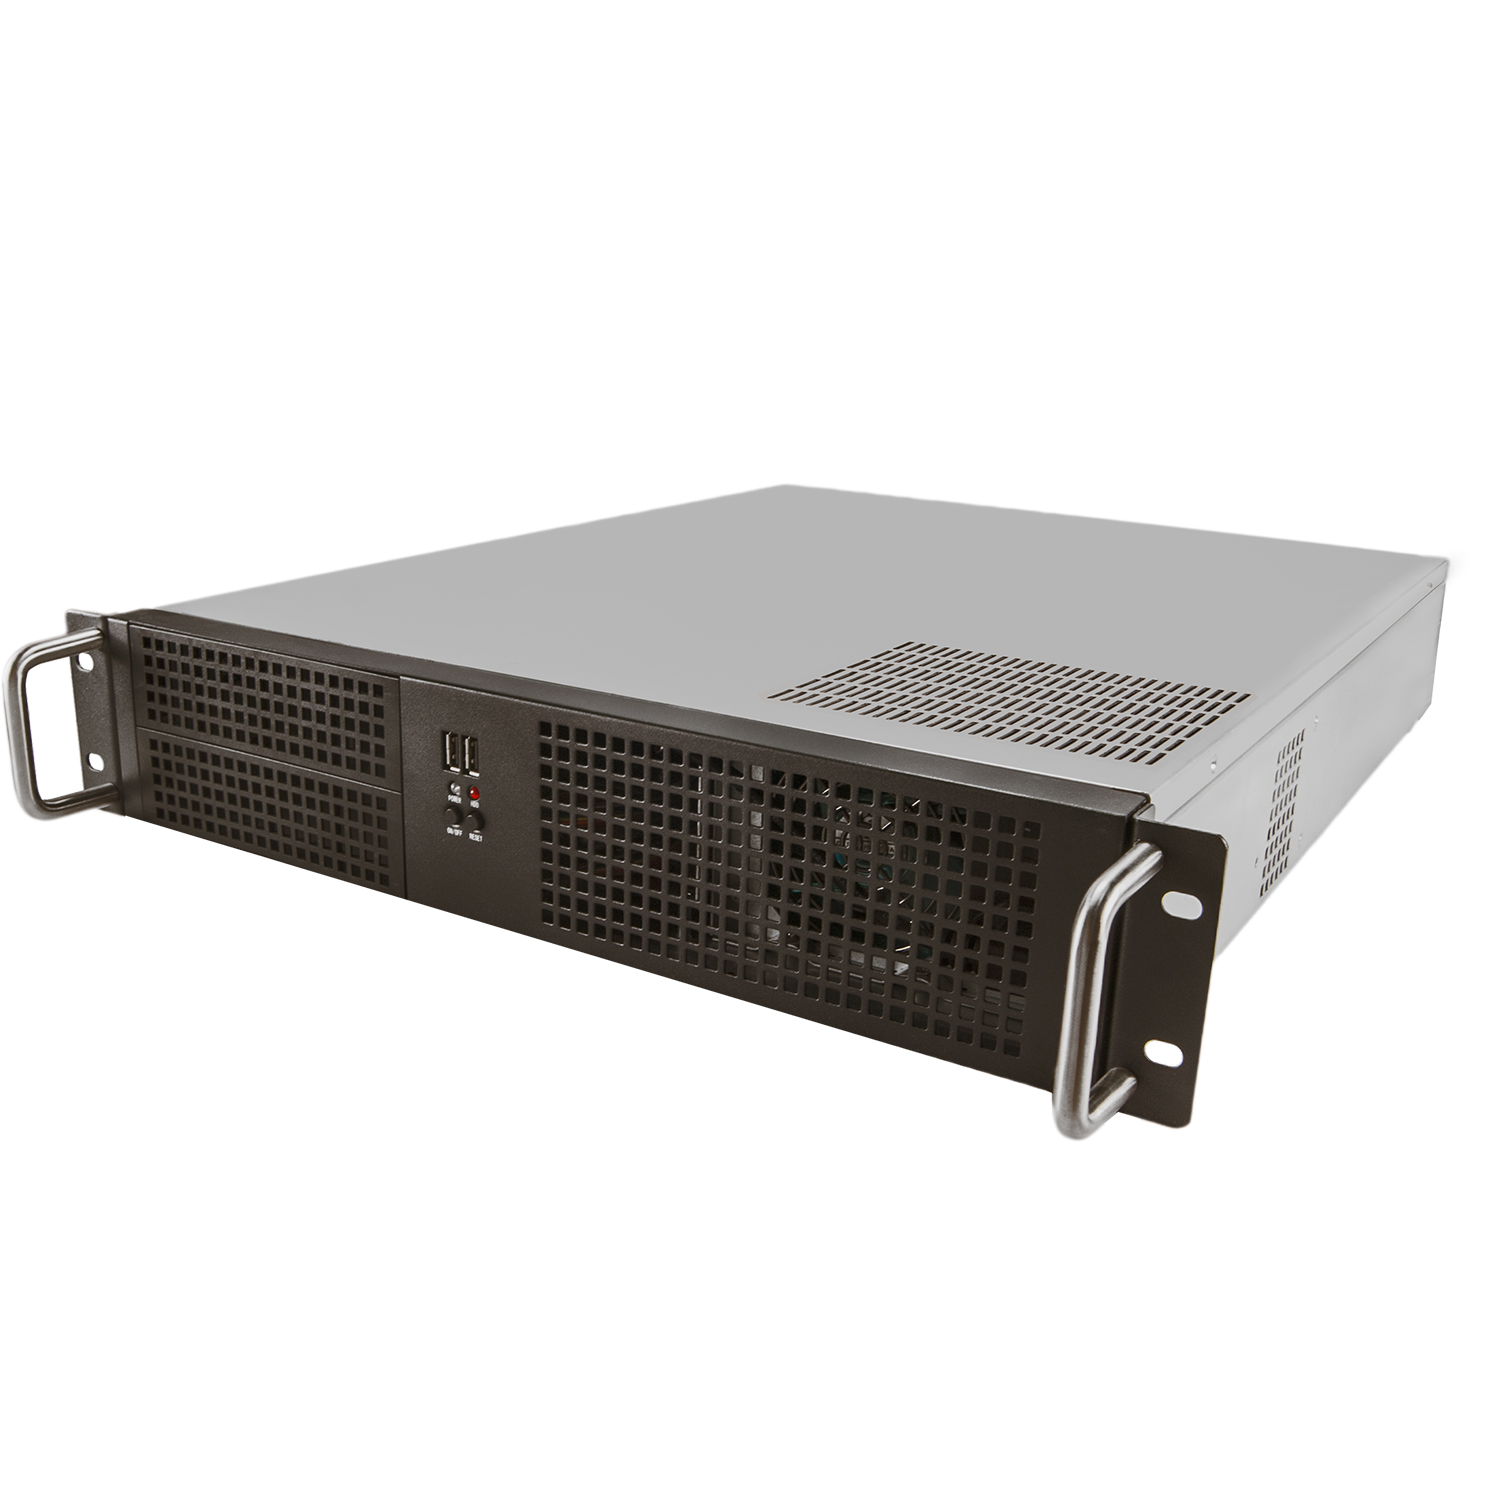 Серверный корпус 2U NR-N2055 500Вт (ATX 12x10.5, 2x5.25ext, 6x3.5int, 550mm) чёрный, NegoRack